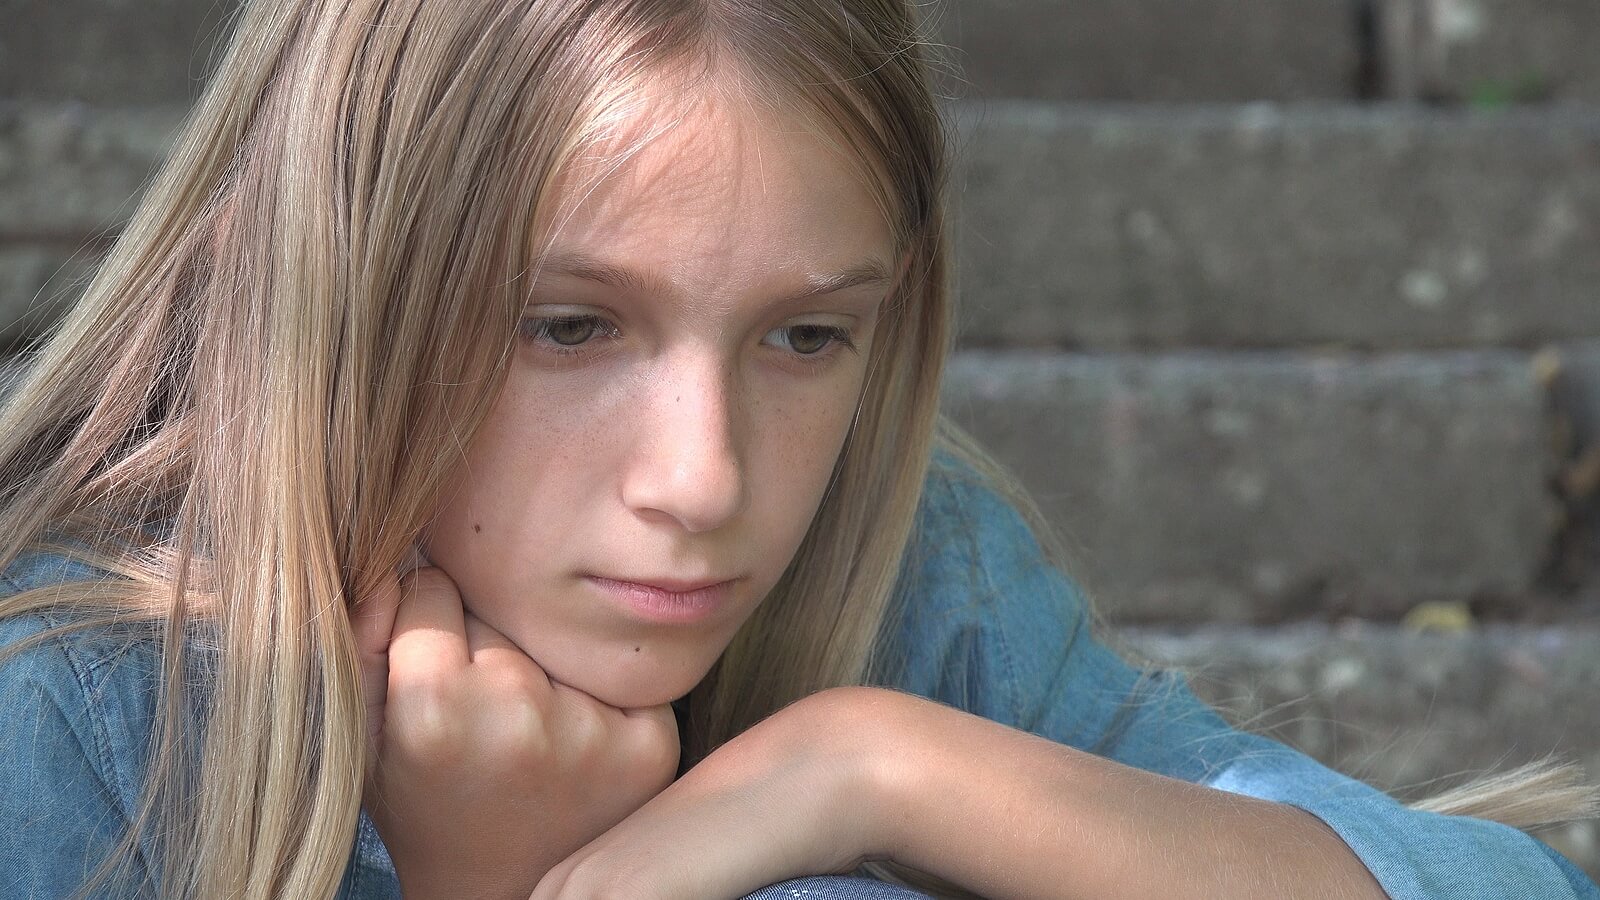 A teenage girl looking pensive.